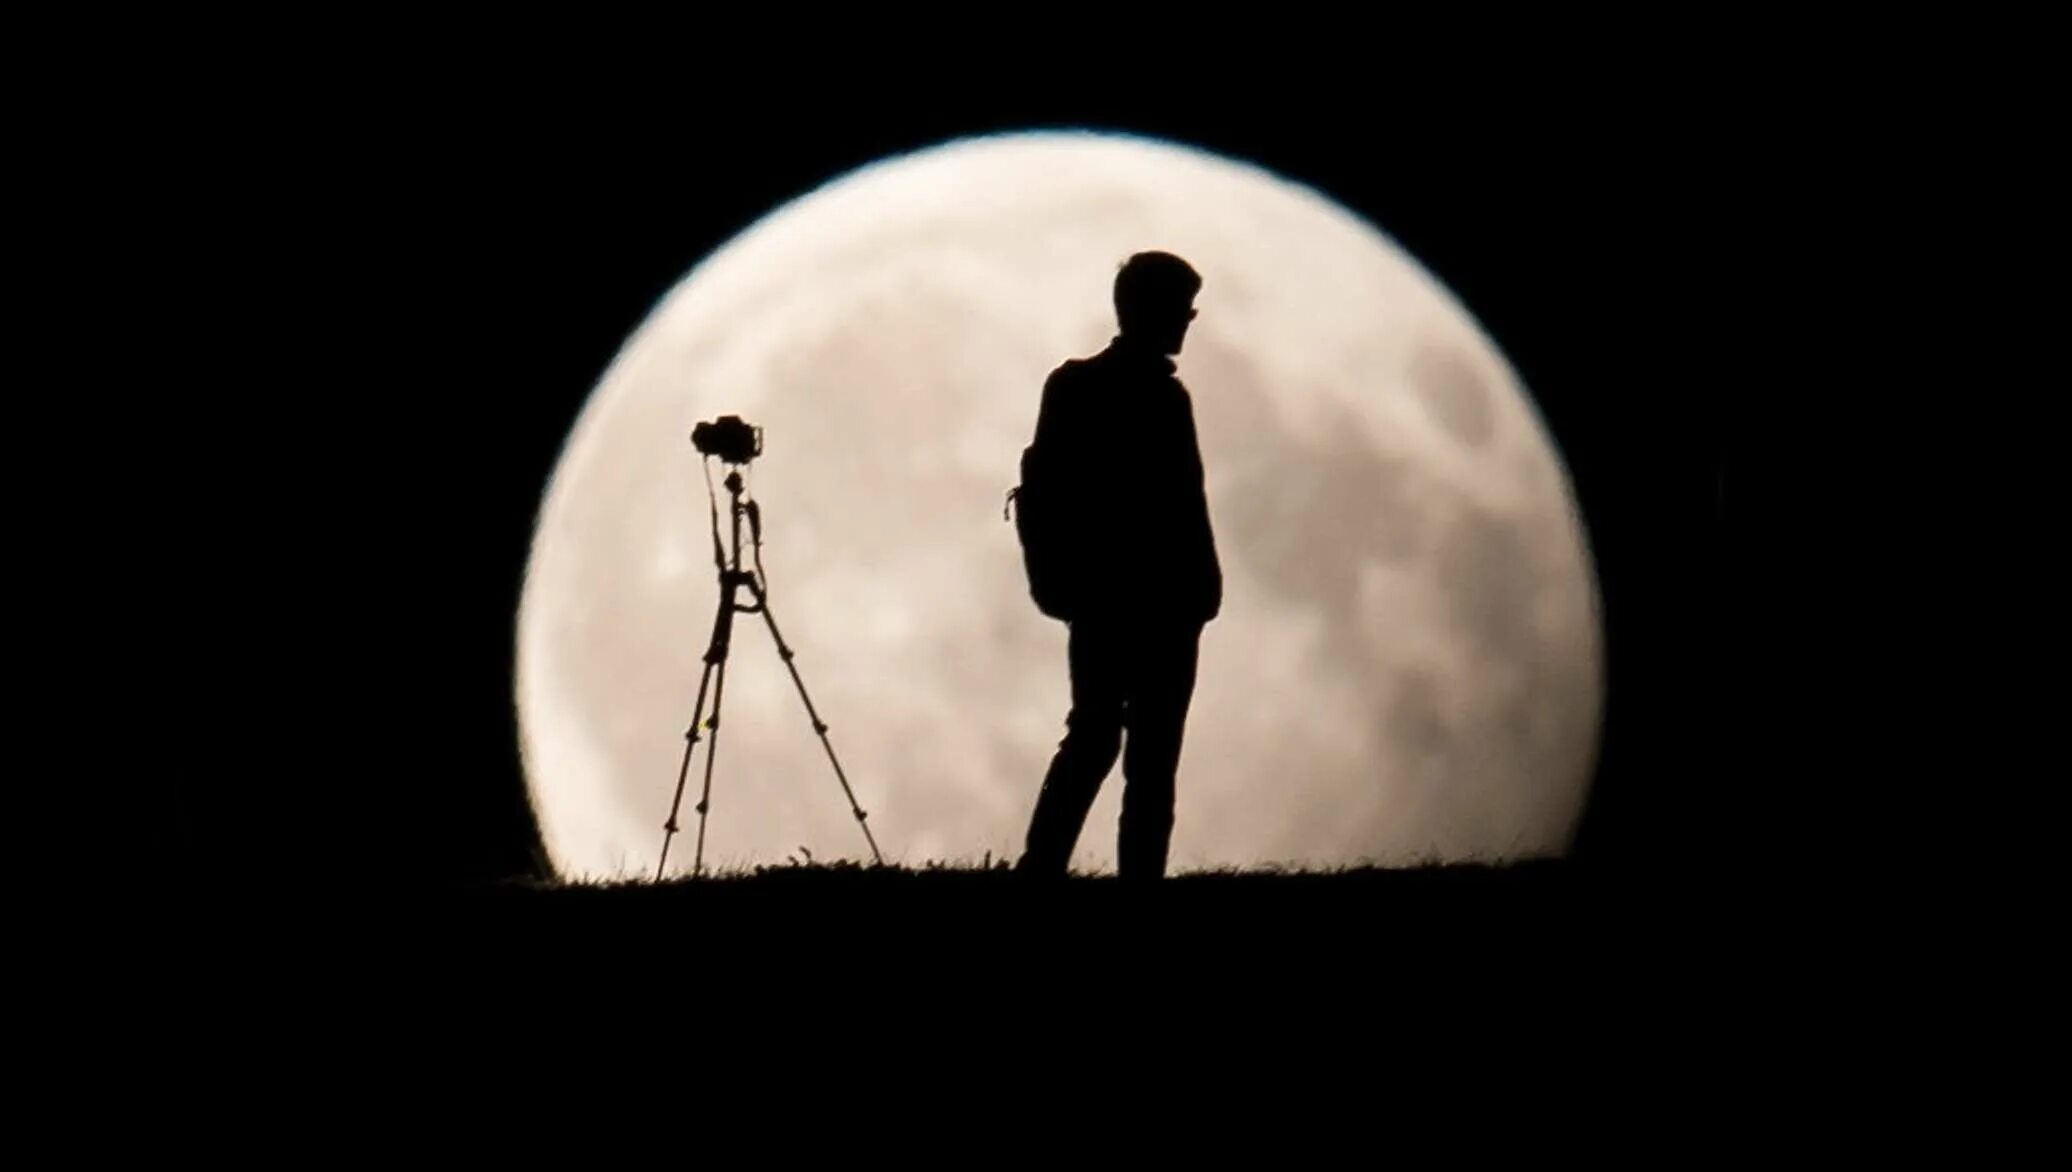 Затмение человек. Человек фоткает луну. Затмение разума. Человек фотографируется с луной. Земли следить за человеком